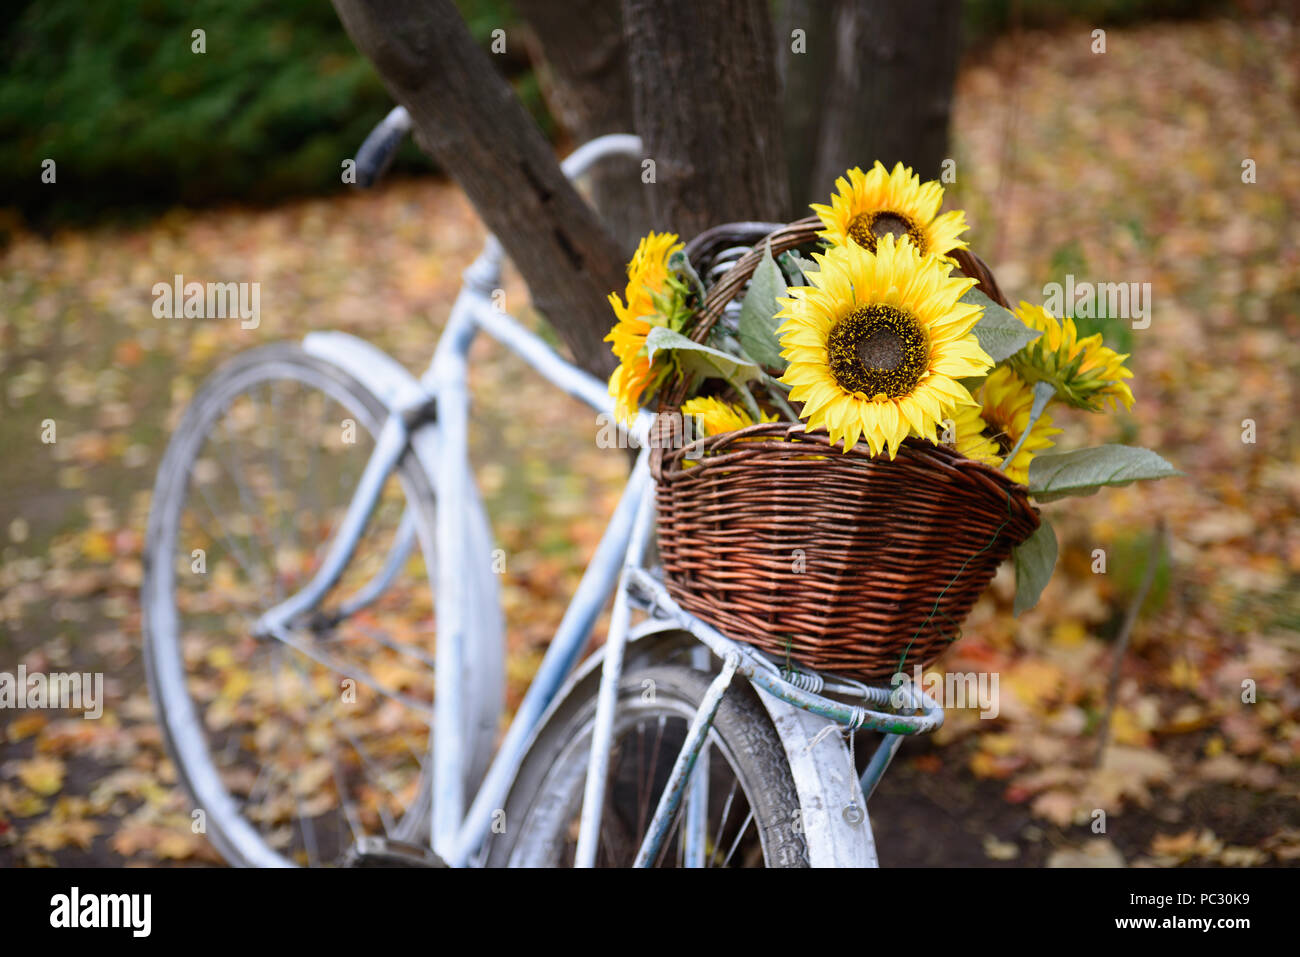 Blumenstrauß aus Sonnenblumen im Stroh Korb auf Retro styled Fahrrad Herbst  Wald Stockfotografie - Alamy